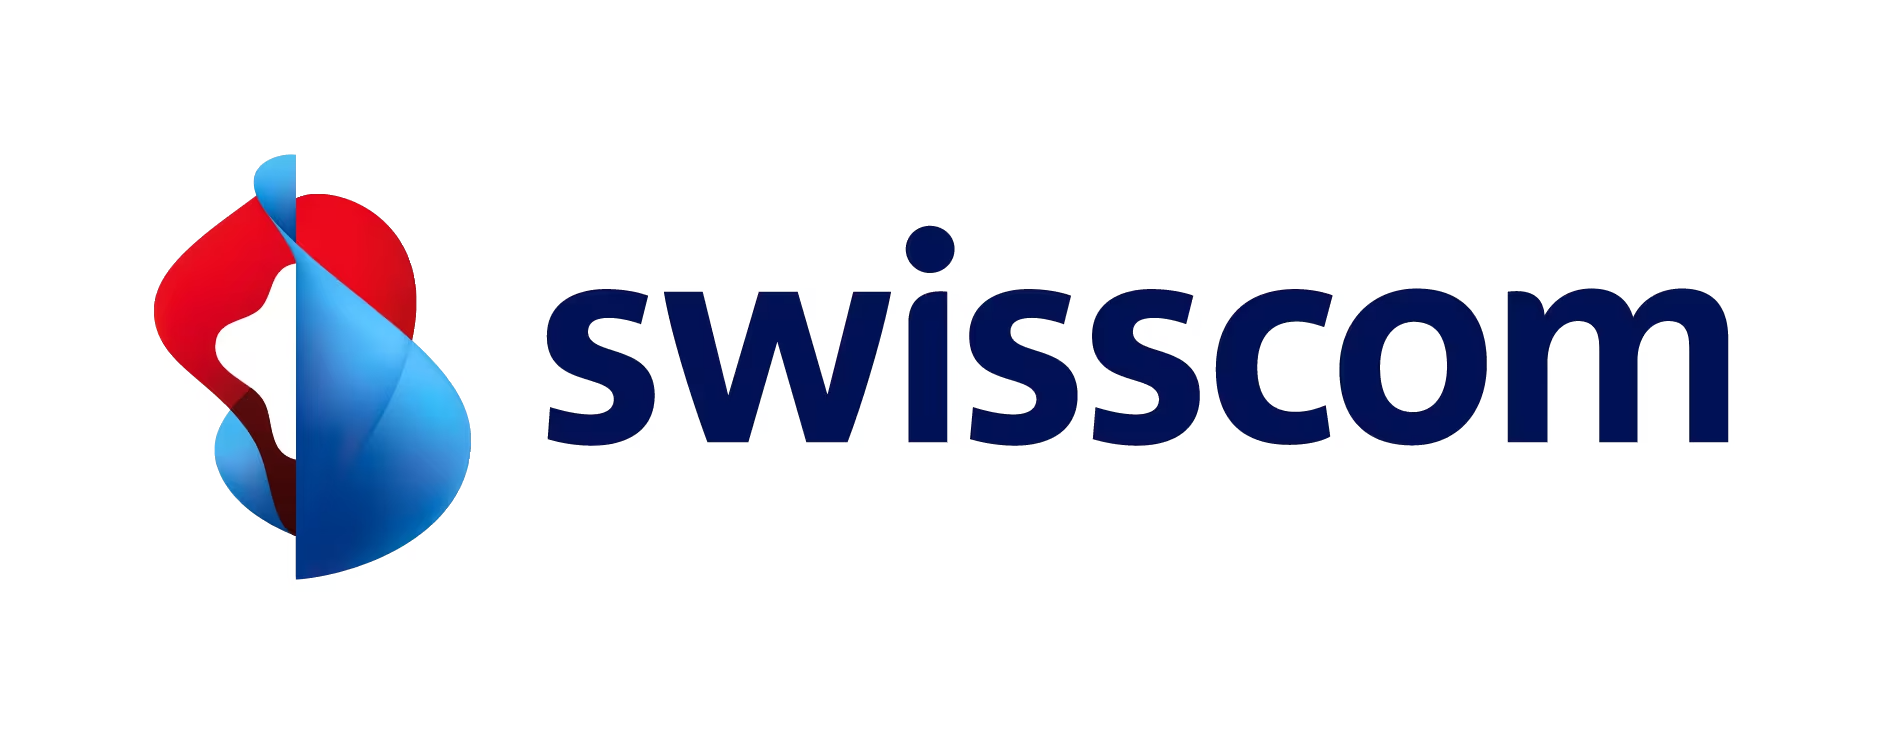 Swisscom: der beliebteste Internetanbieter